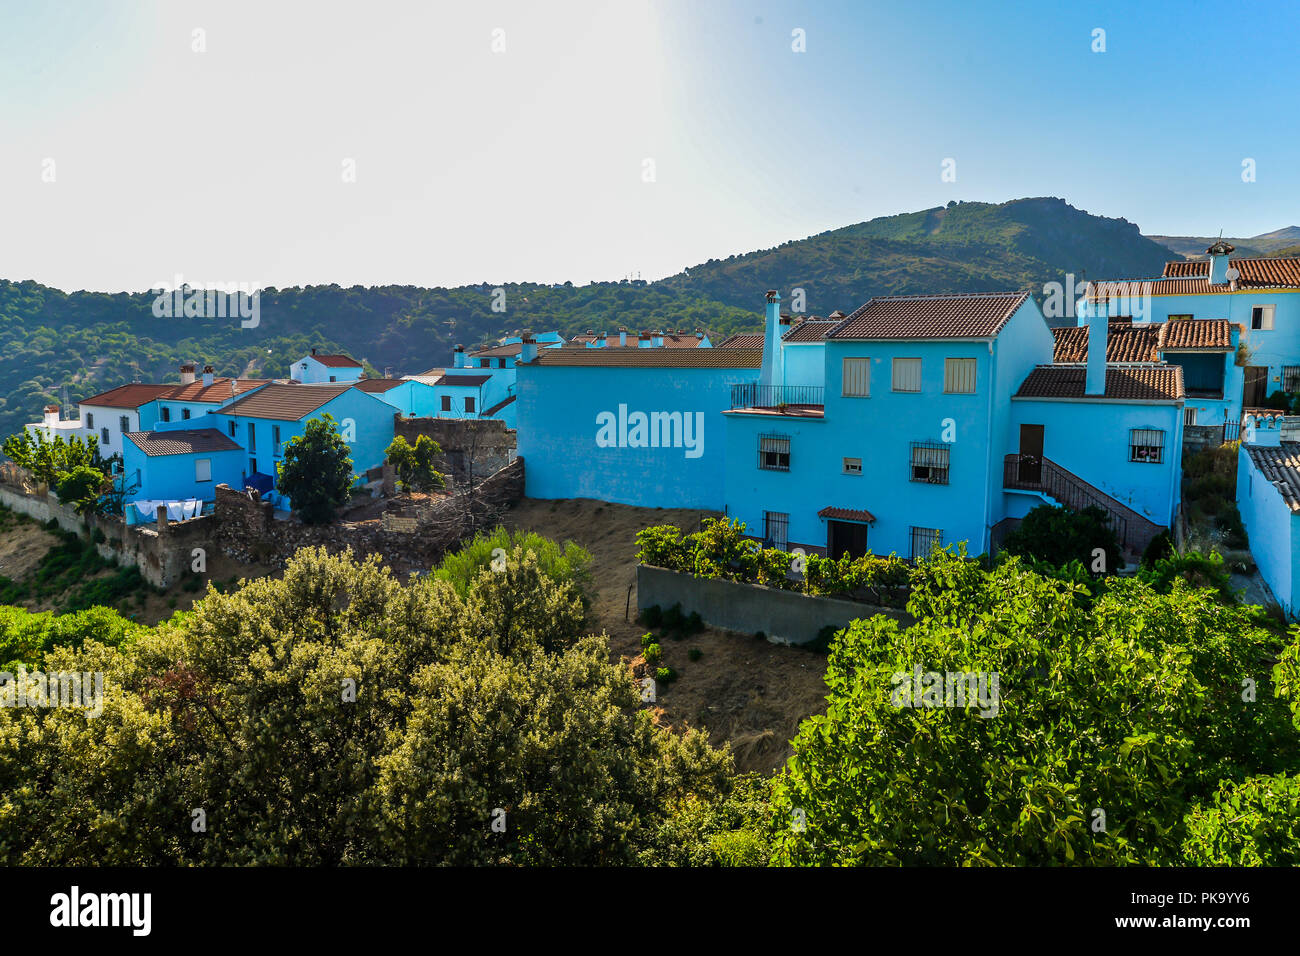 Der Schlumpf Dorf in der Nähe von Ronda - Andalusien, Spanien Stockfoto